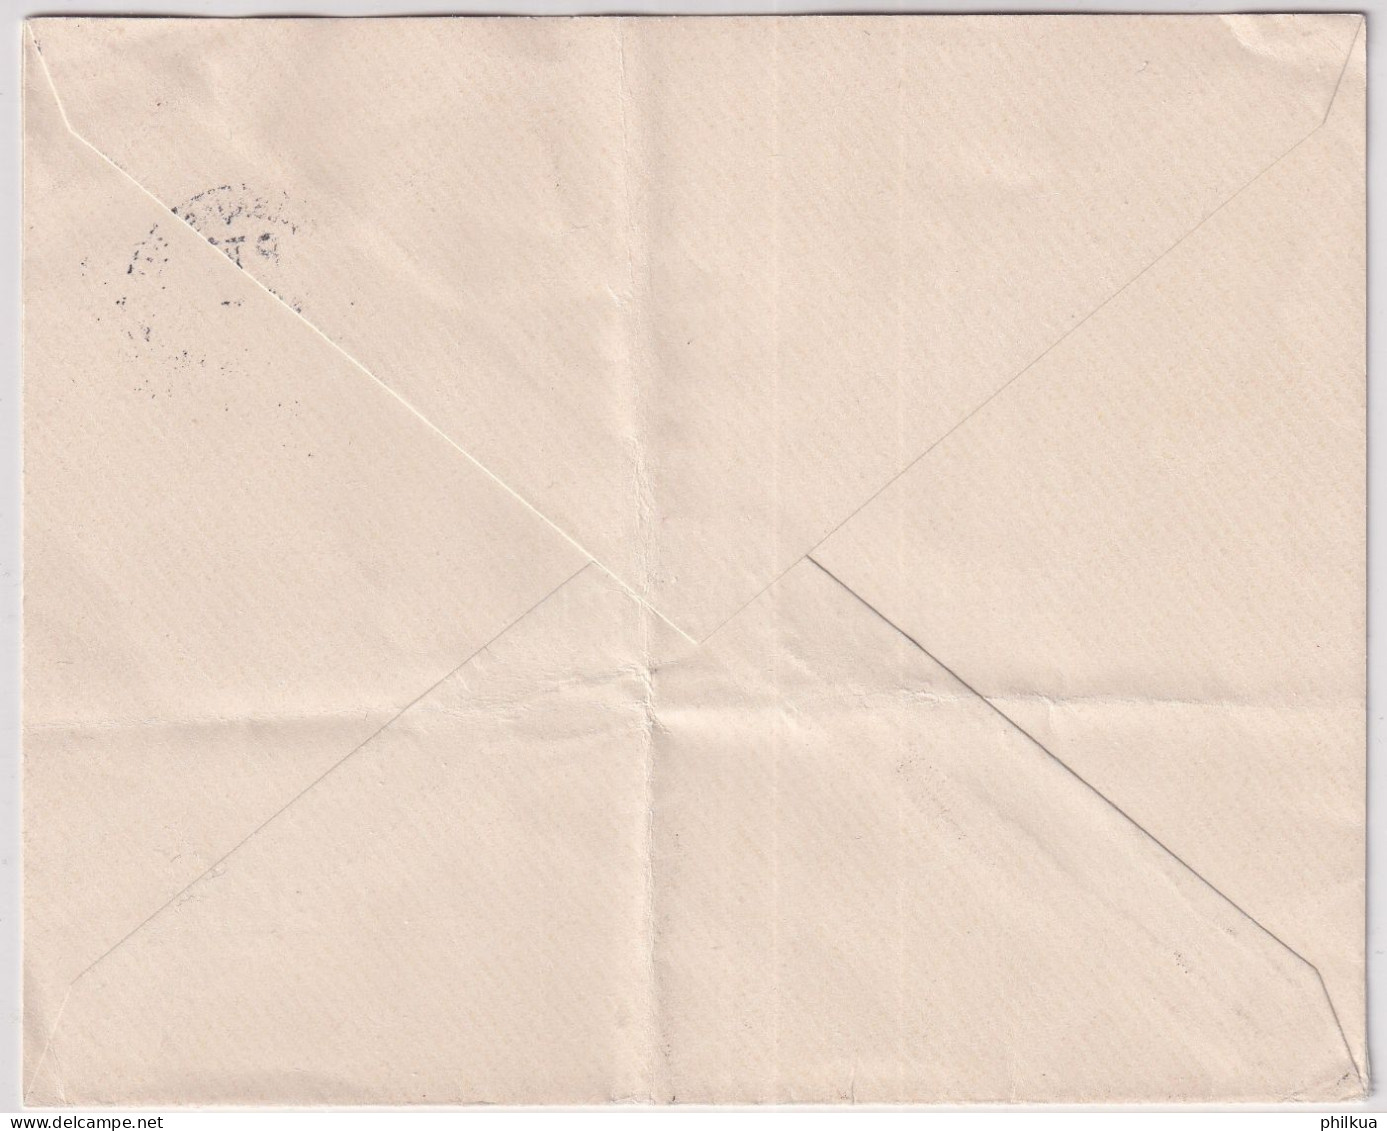 Zum. 237z / Mi. 353z Auf Landi 1939 I Auf Firmen-Brief Heinrich Wehrli Mühle Tiefenbrunnen Zürich Mit Landi SS DÖRFLI - Covers & Documents